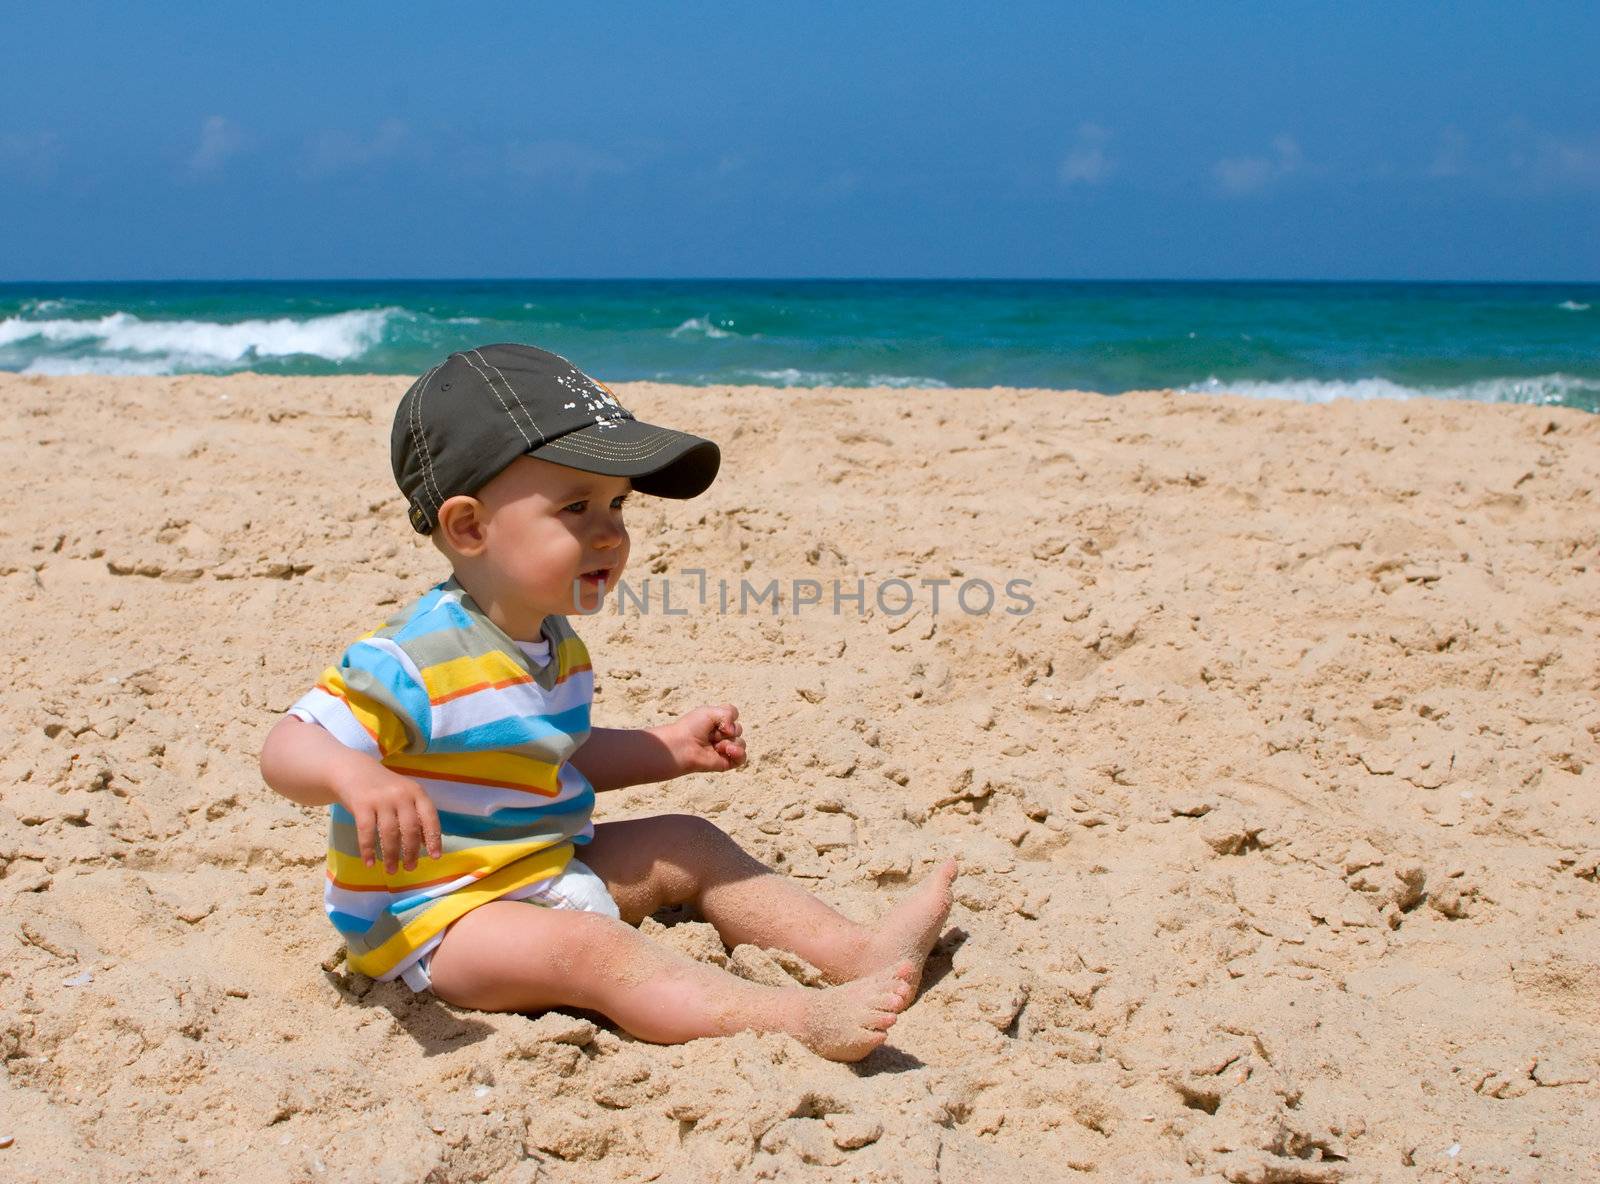 Little boy on sand by kzen